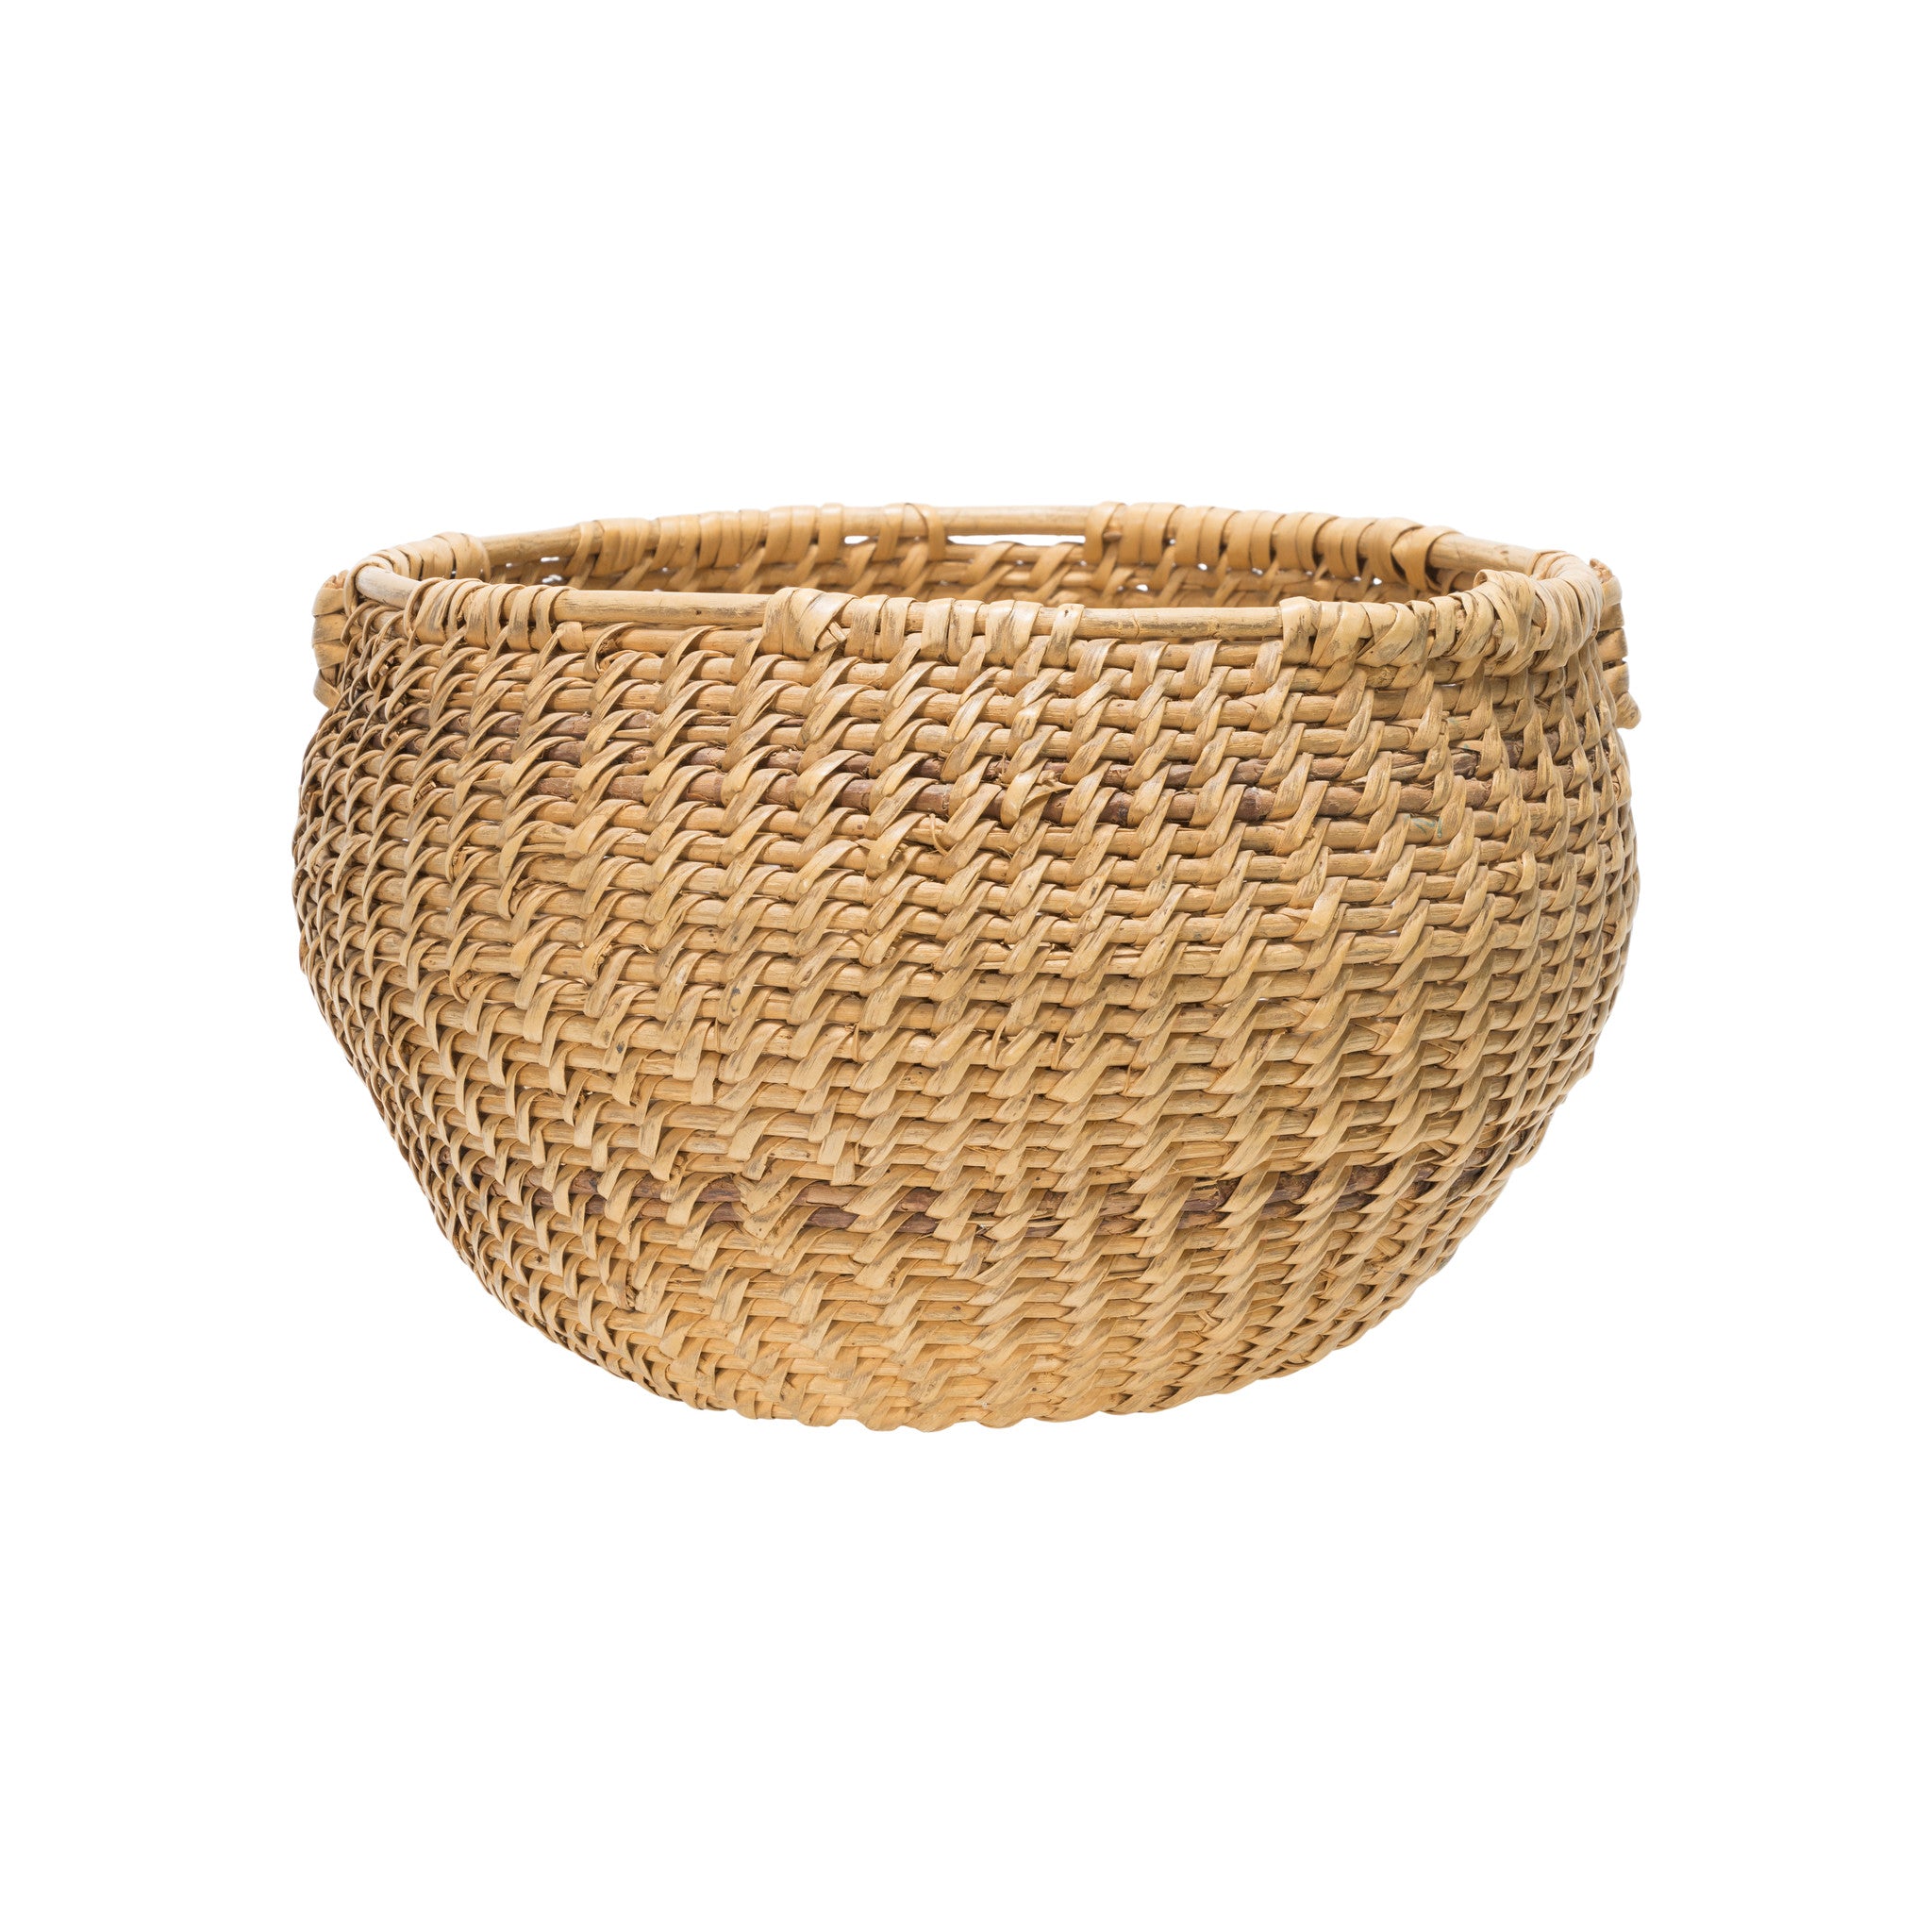 Shoshone Basketry Bowl